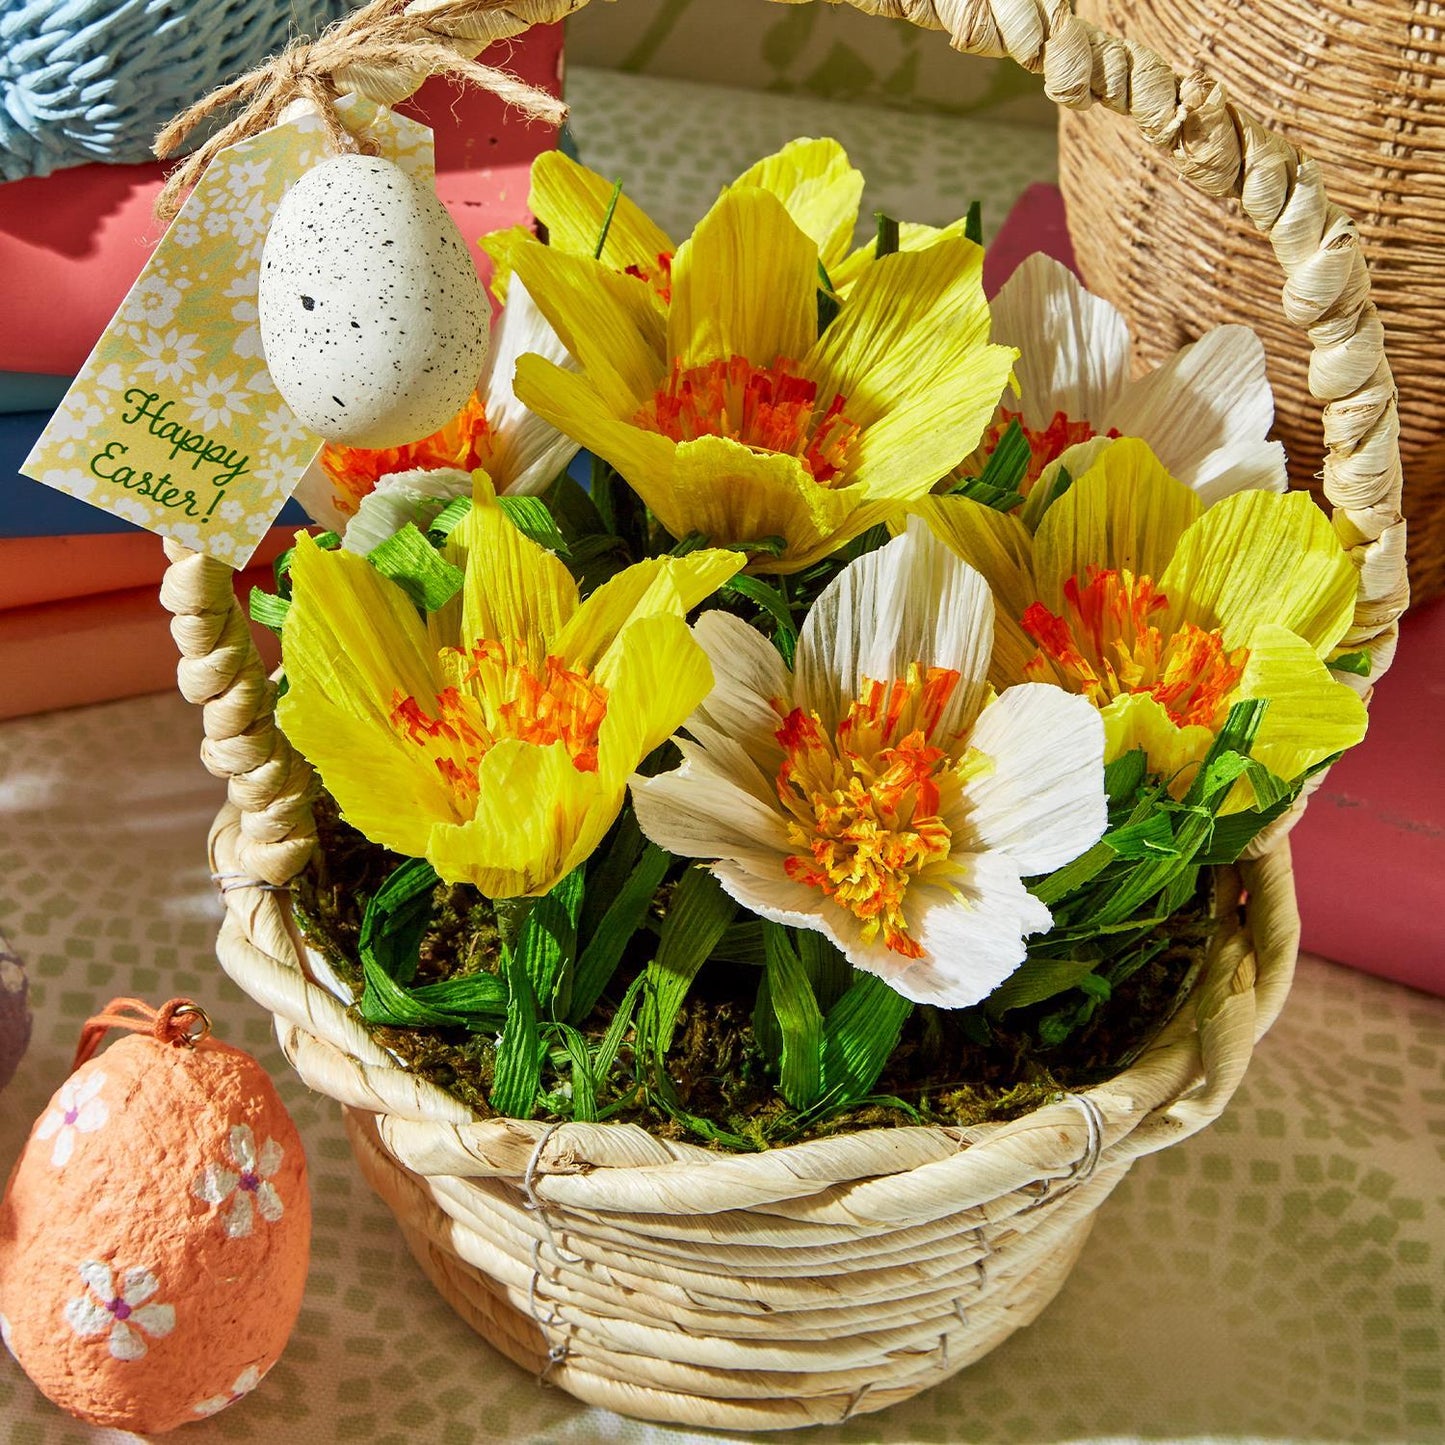 Easter Flower Basket